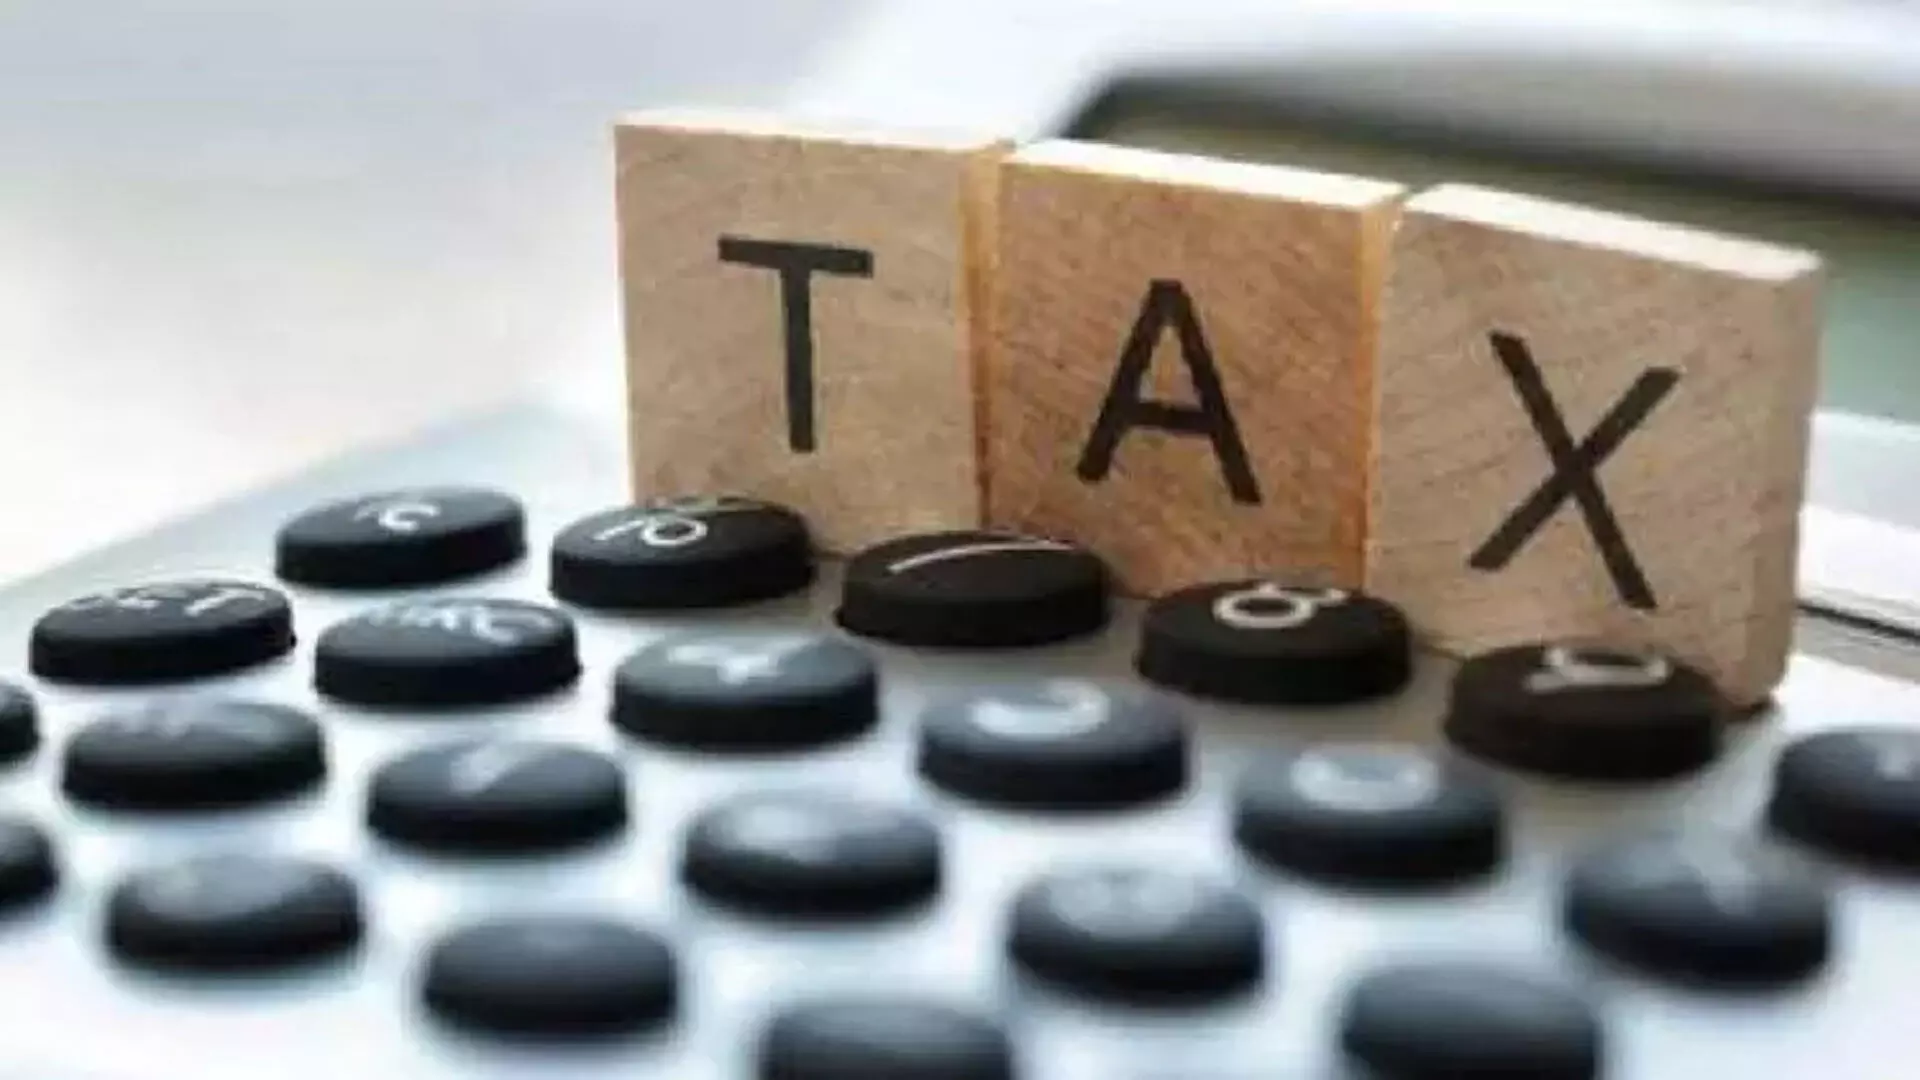 Tax clearance प्रमाणपत्र केवल उच्च-मूल्य वाले चूककर्ताओं को विदेश जाने के लिए मिलेगा- केंद्र